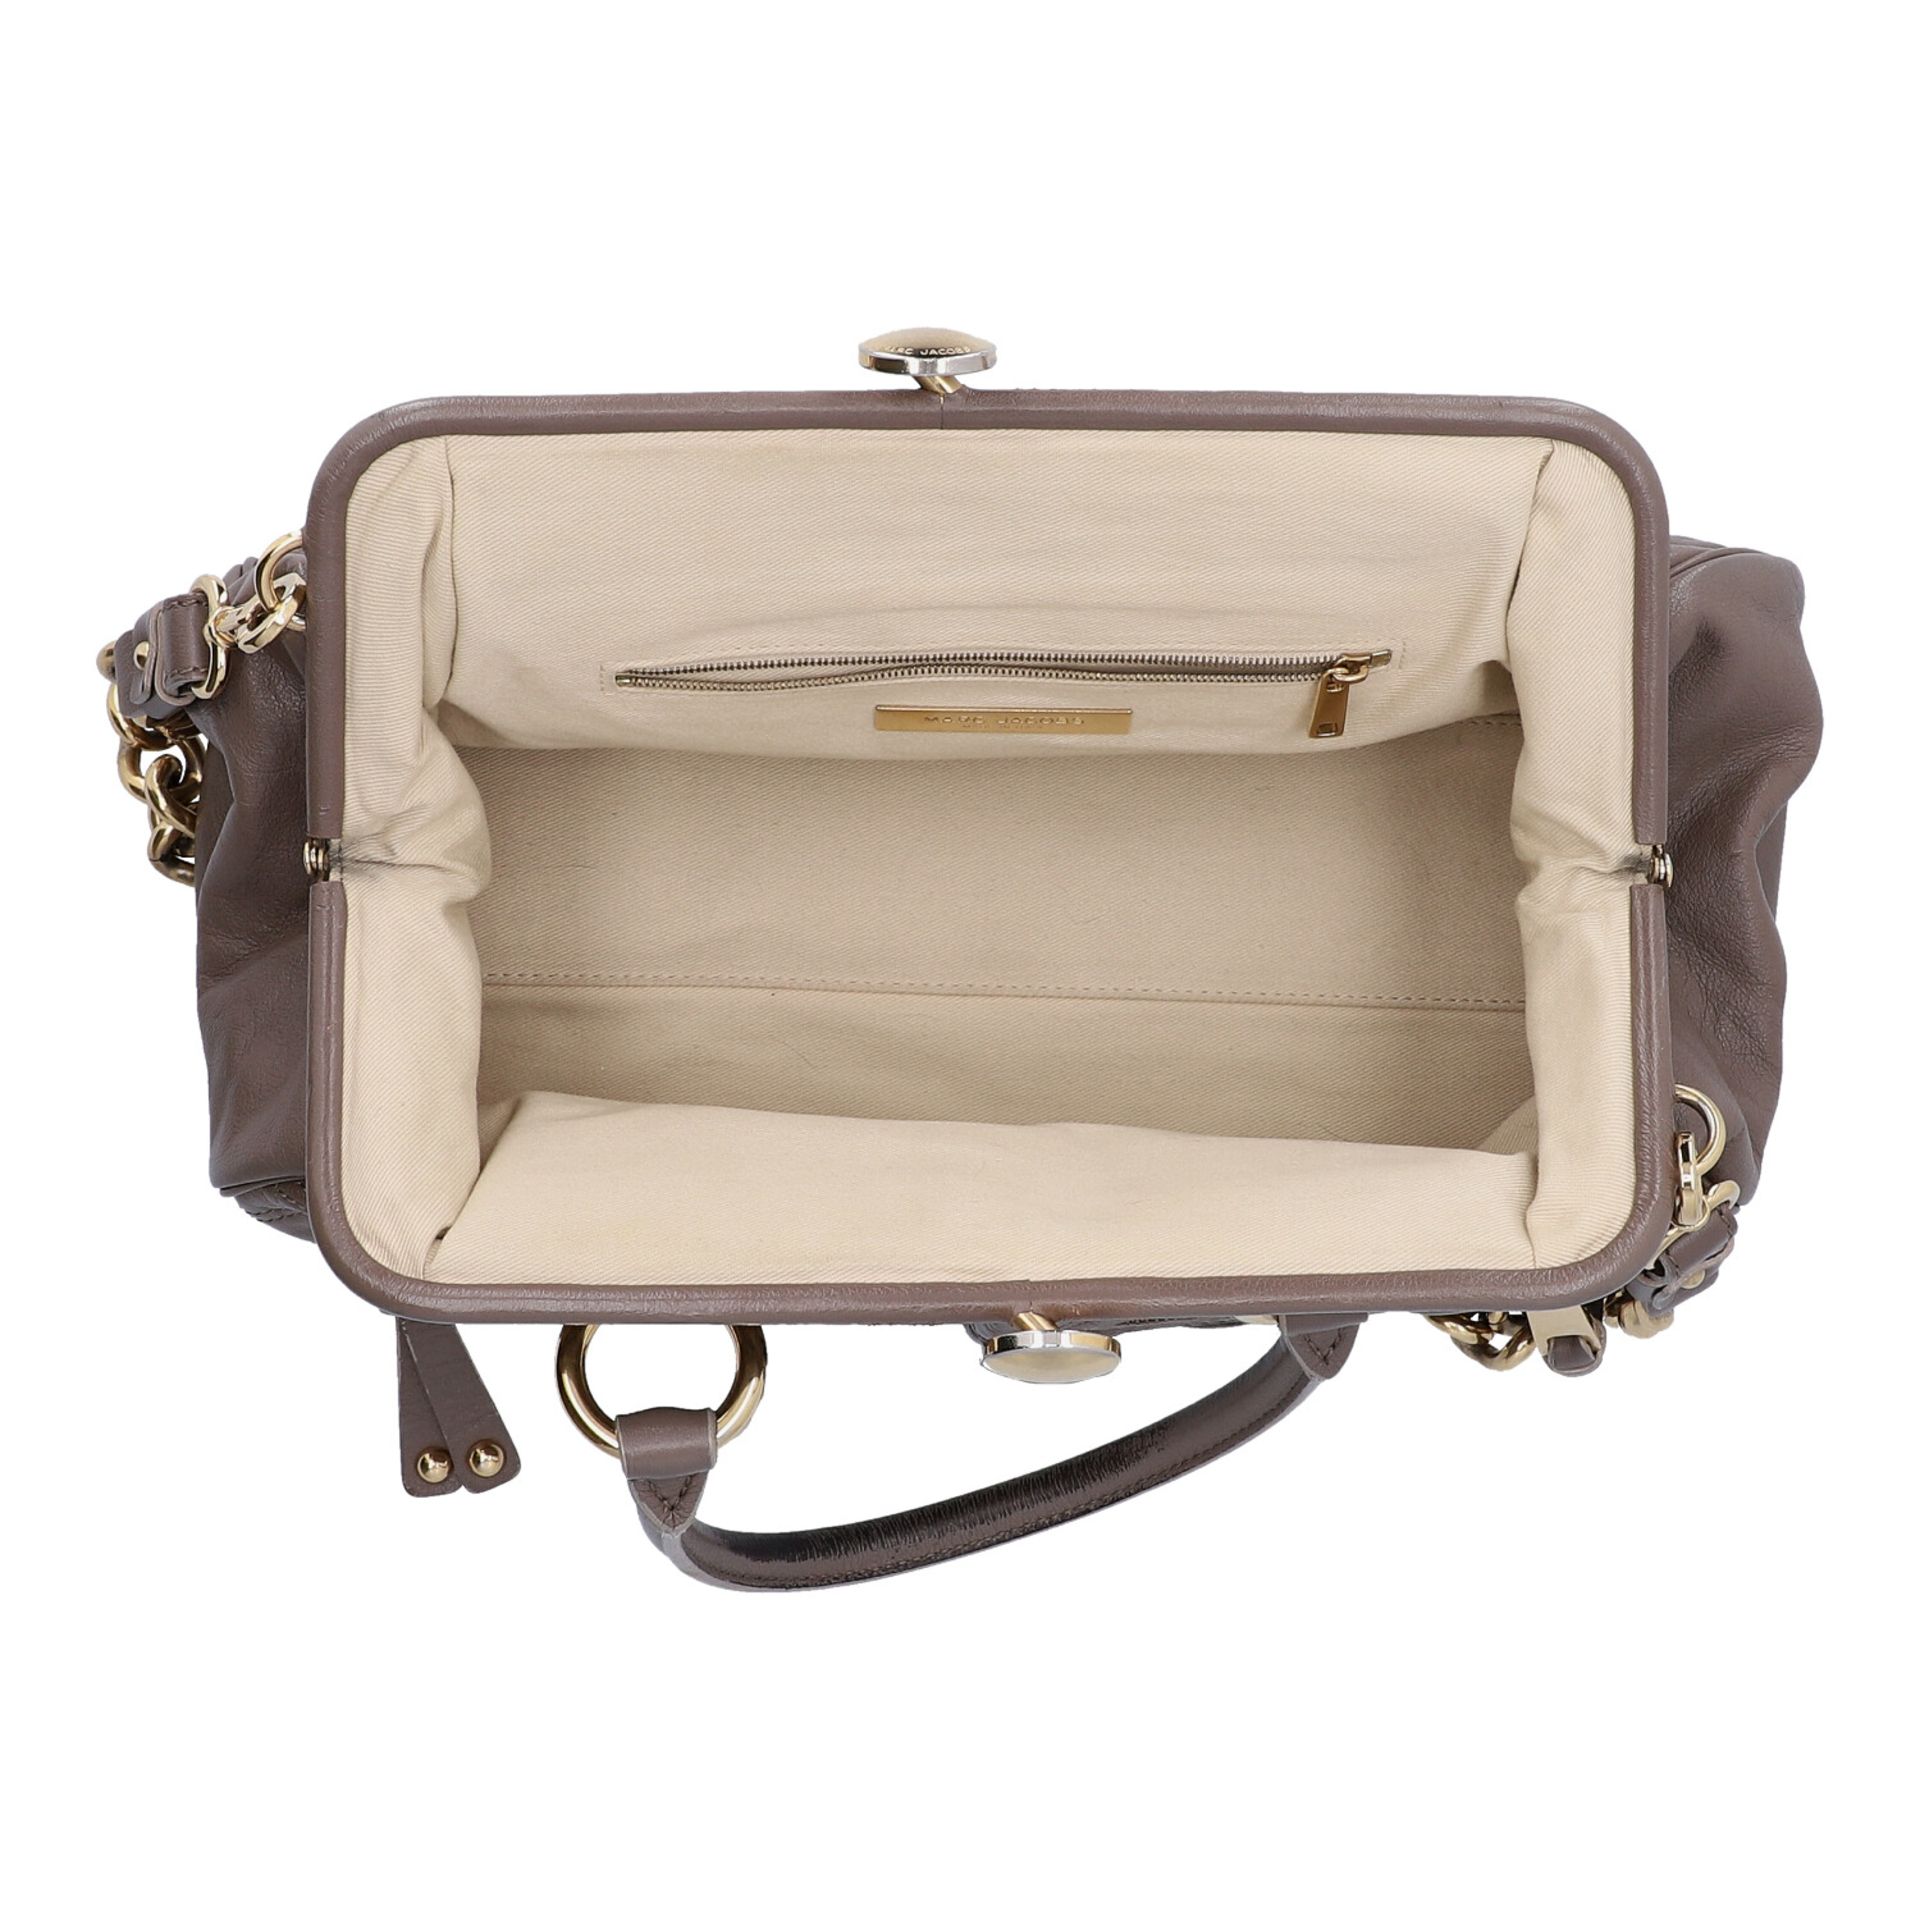 MARC JACOBS Handtasche. Leder in Elefantengrau mit goldfarbener Hardware und Rautenste - Image 6 of 8